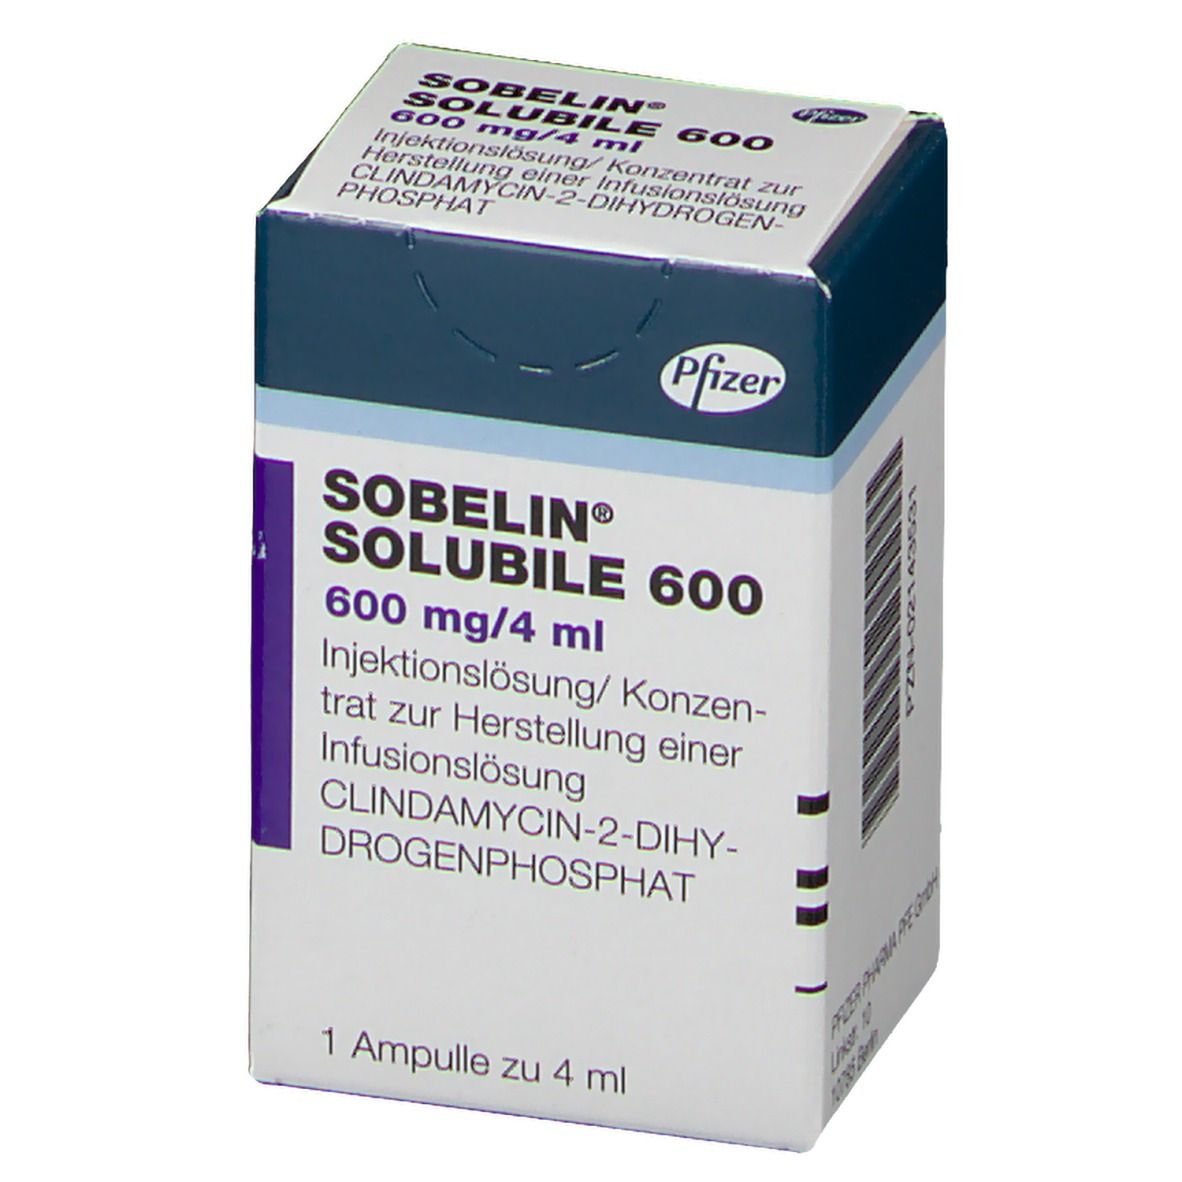 SOBELIN® SOLUBILE 600